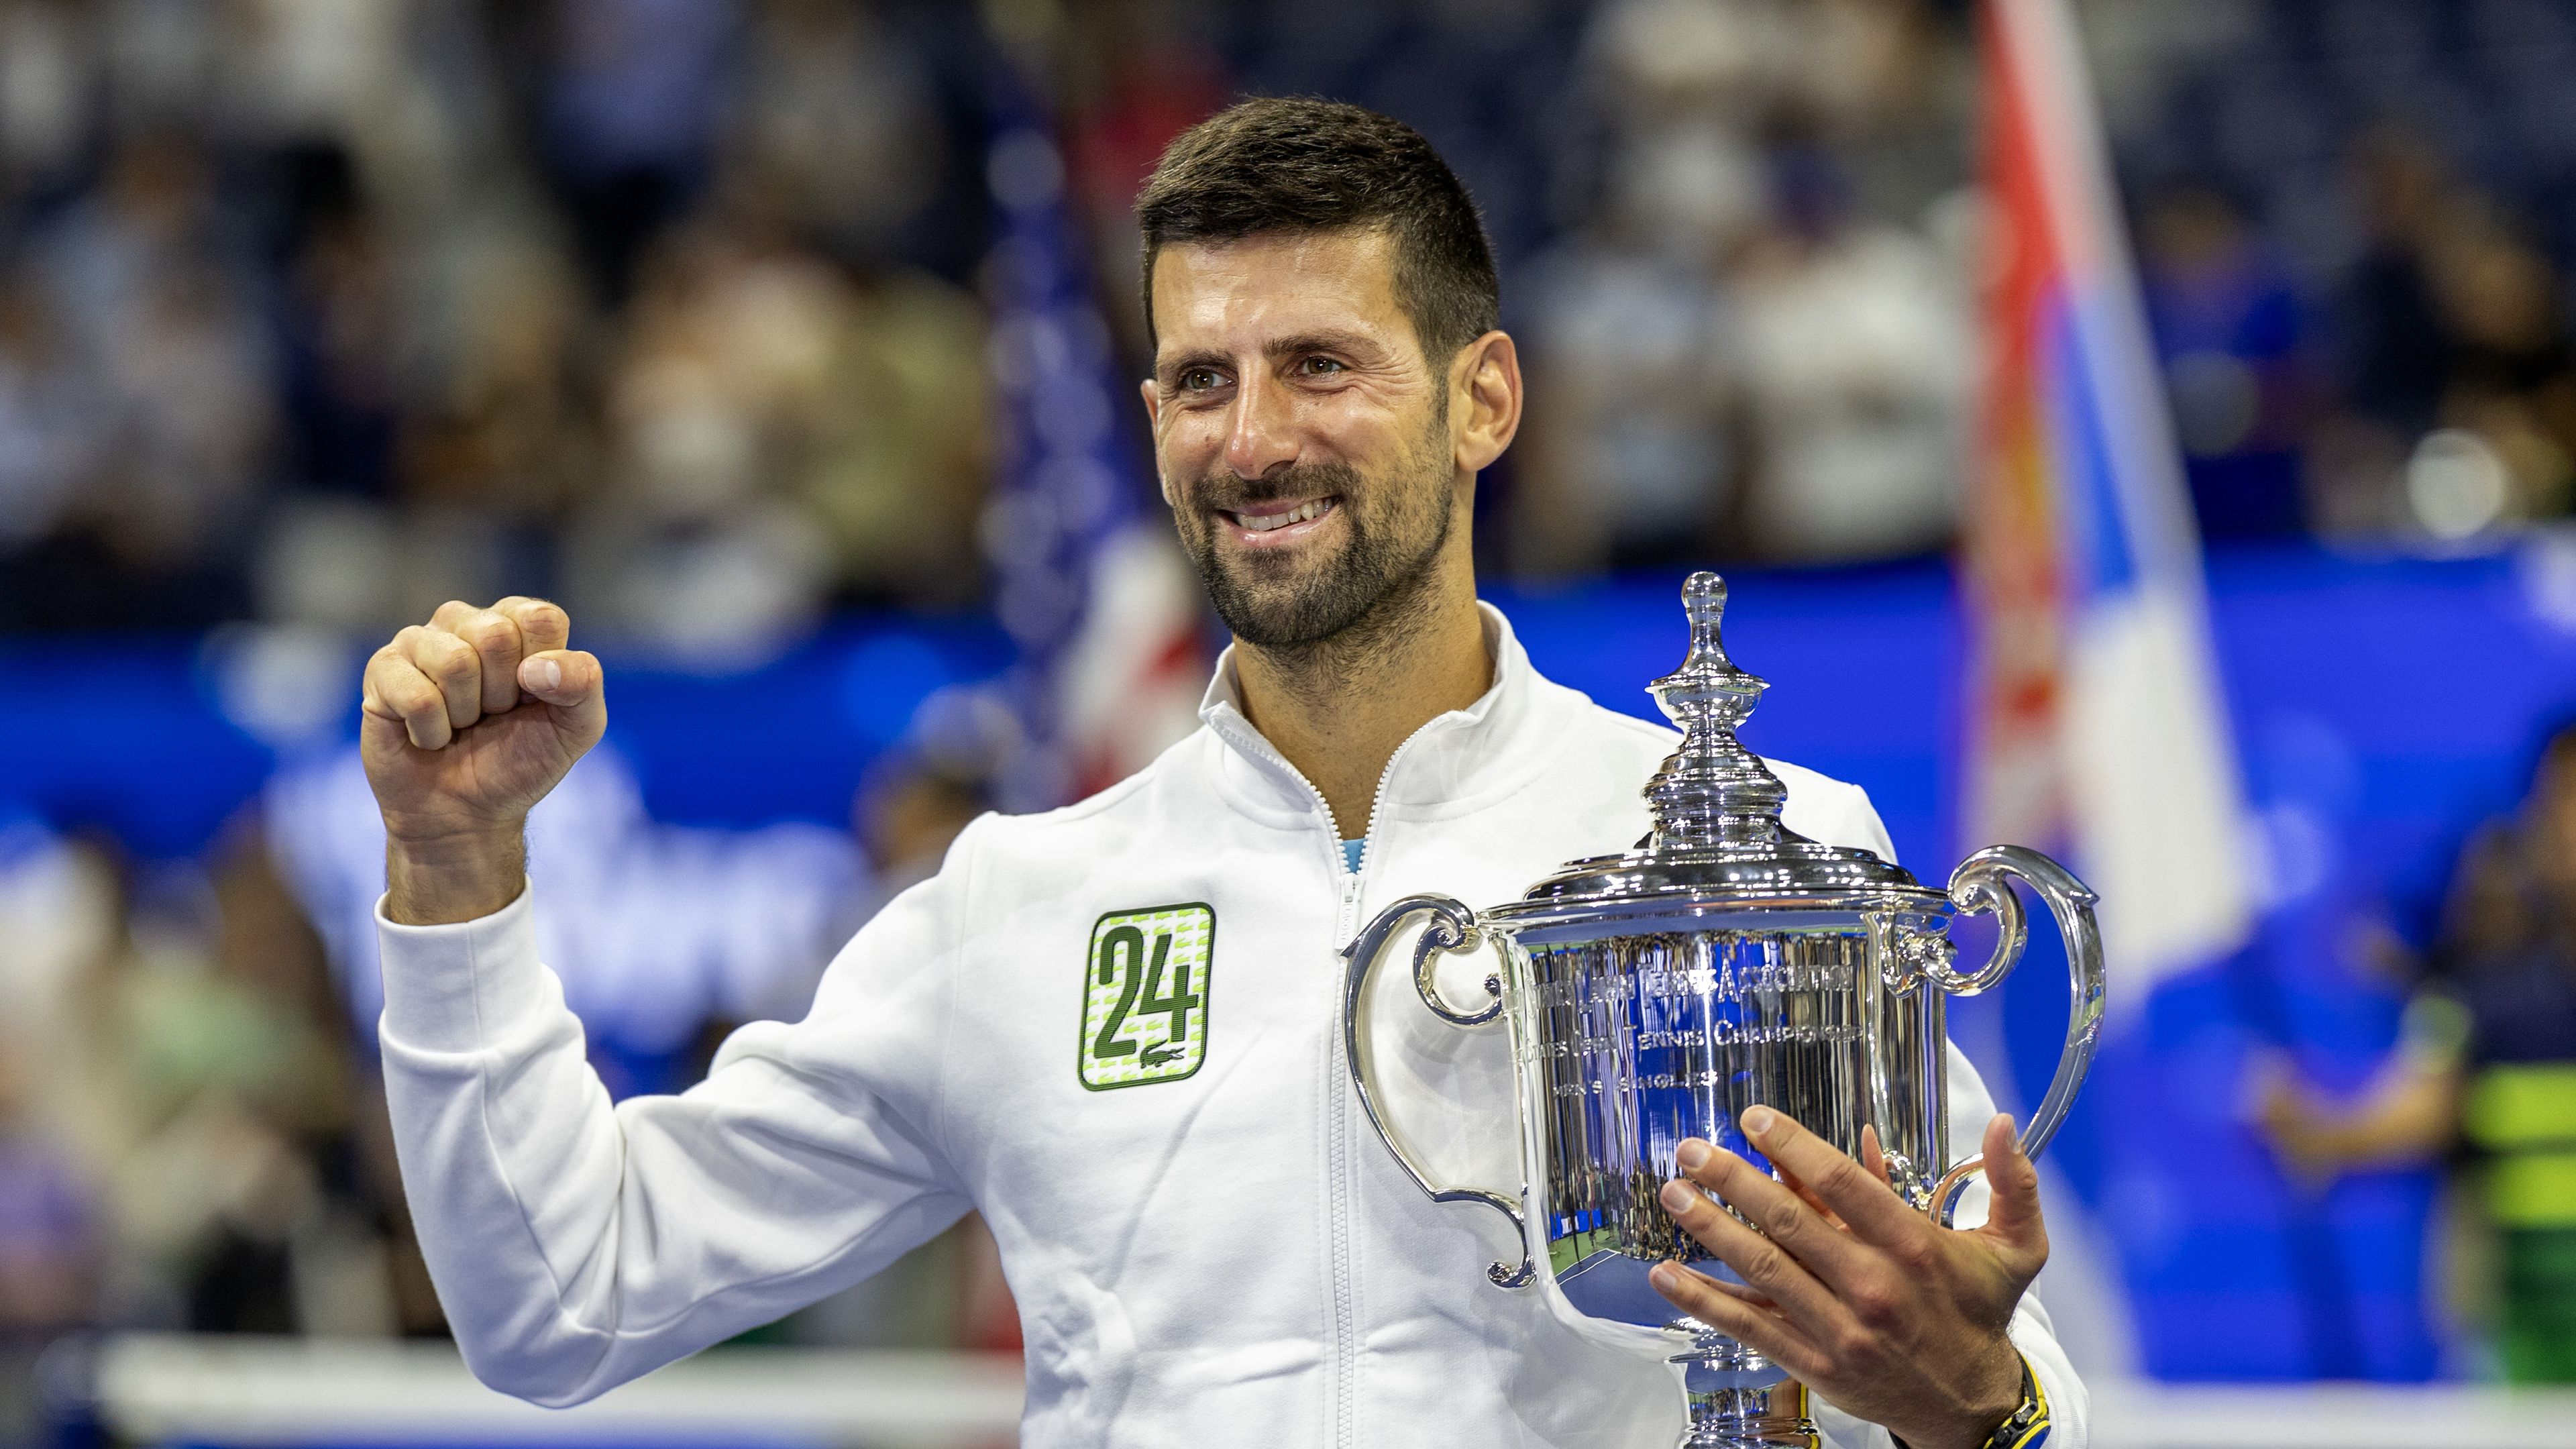 A szerb világklasszis történelmet írt a US Openen